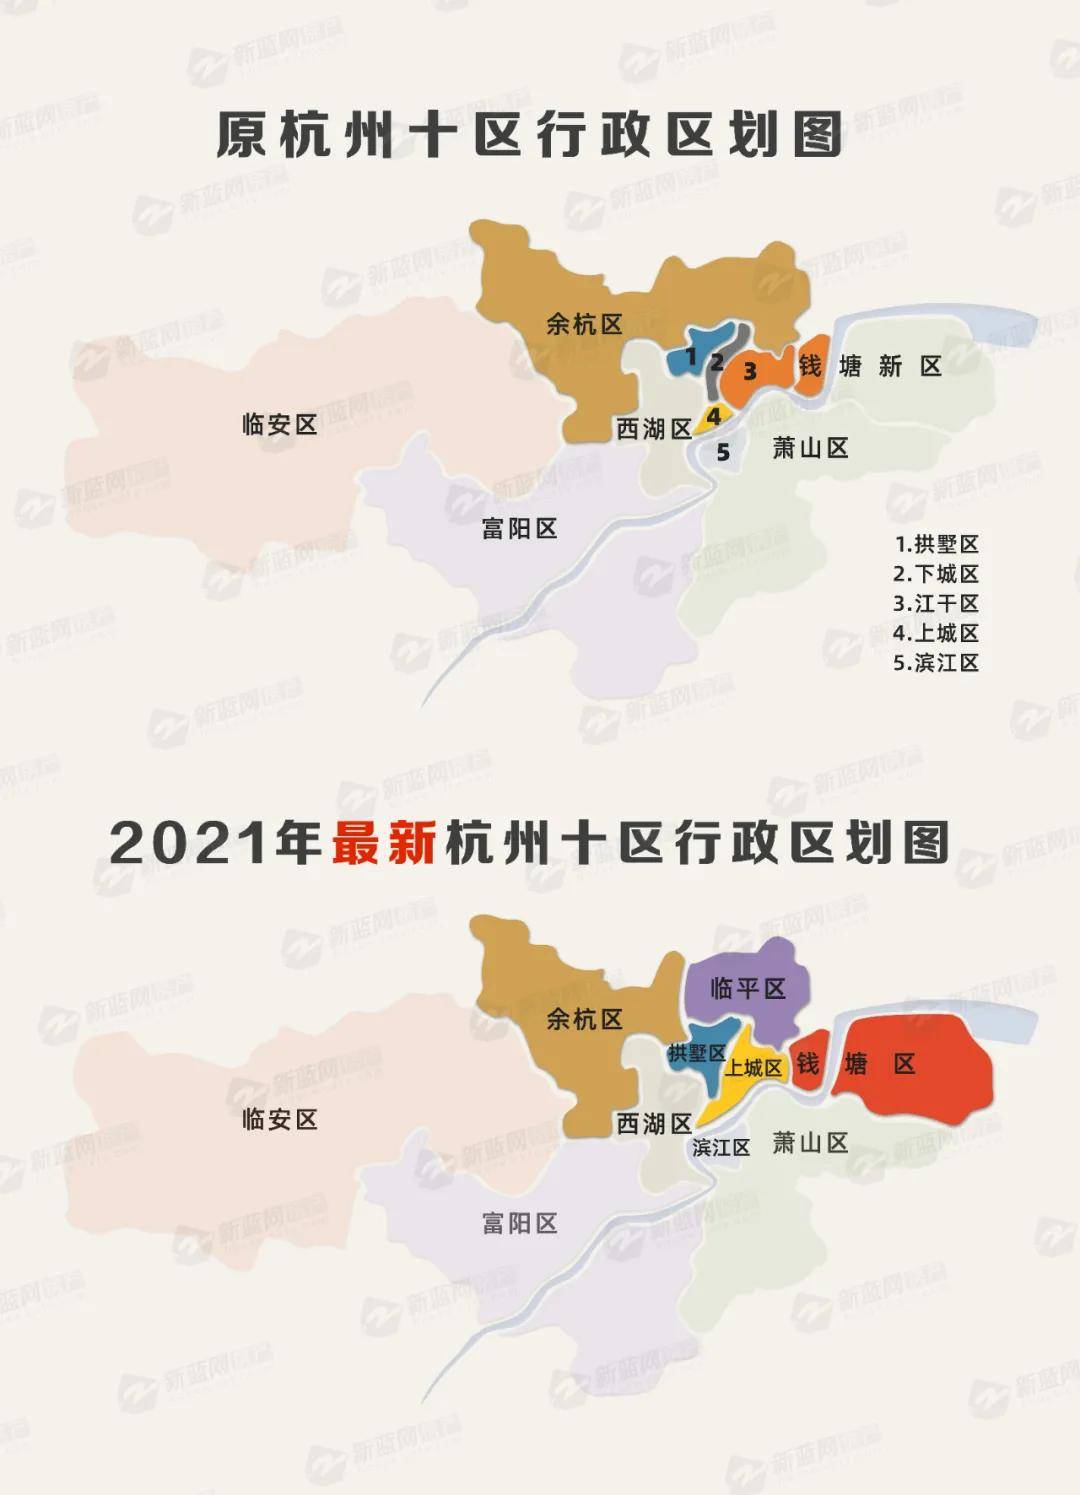 数字说明变化杭州行政区划调整后谁是最大赢家